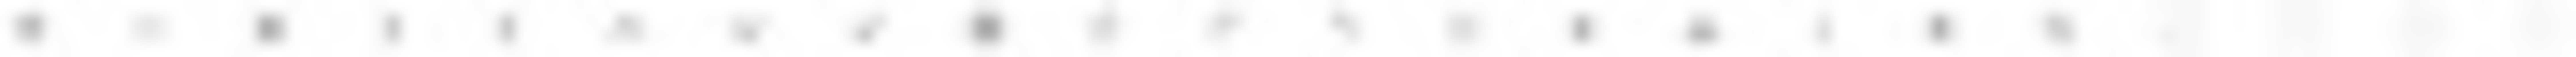 GIMP অনলাইন ইমেজ এডিটর দিয়ে এডিট করার জন্য স্পোর্টওয়া ফ্রি ছবি বা ছবি বিনামূল্যে ডাউনলোড করুন